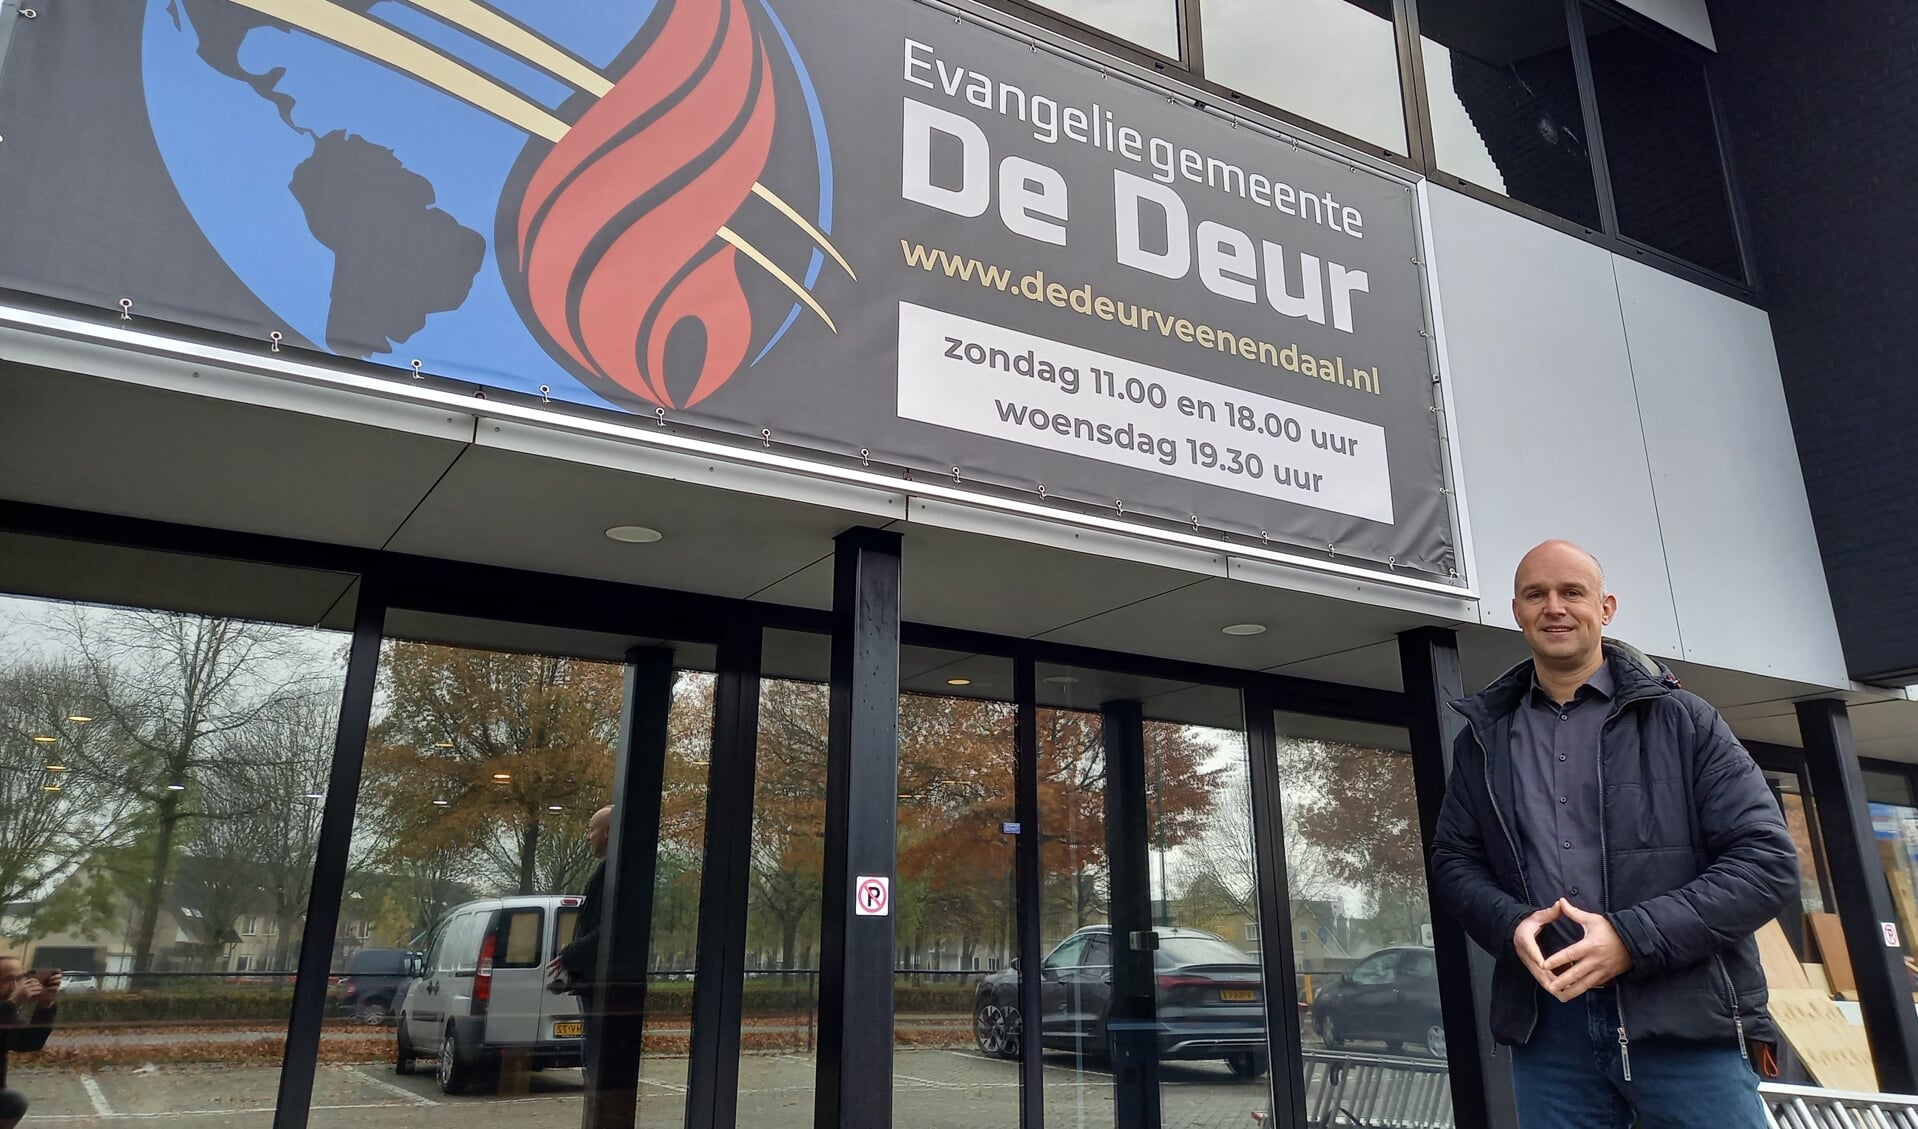 Voorganger Arnoud Terpstra voor het nieuwe pand van evangeliegemeente De Deur aan de Fokkerstraat 36.